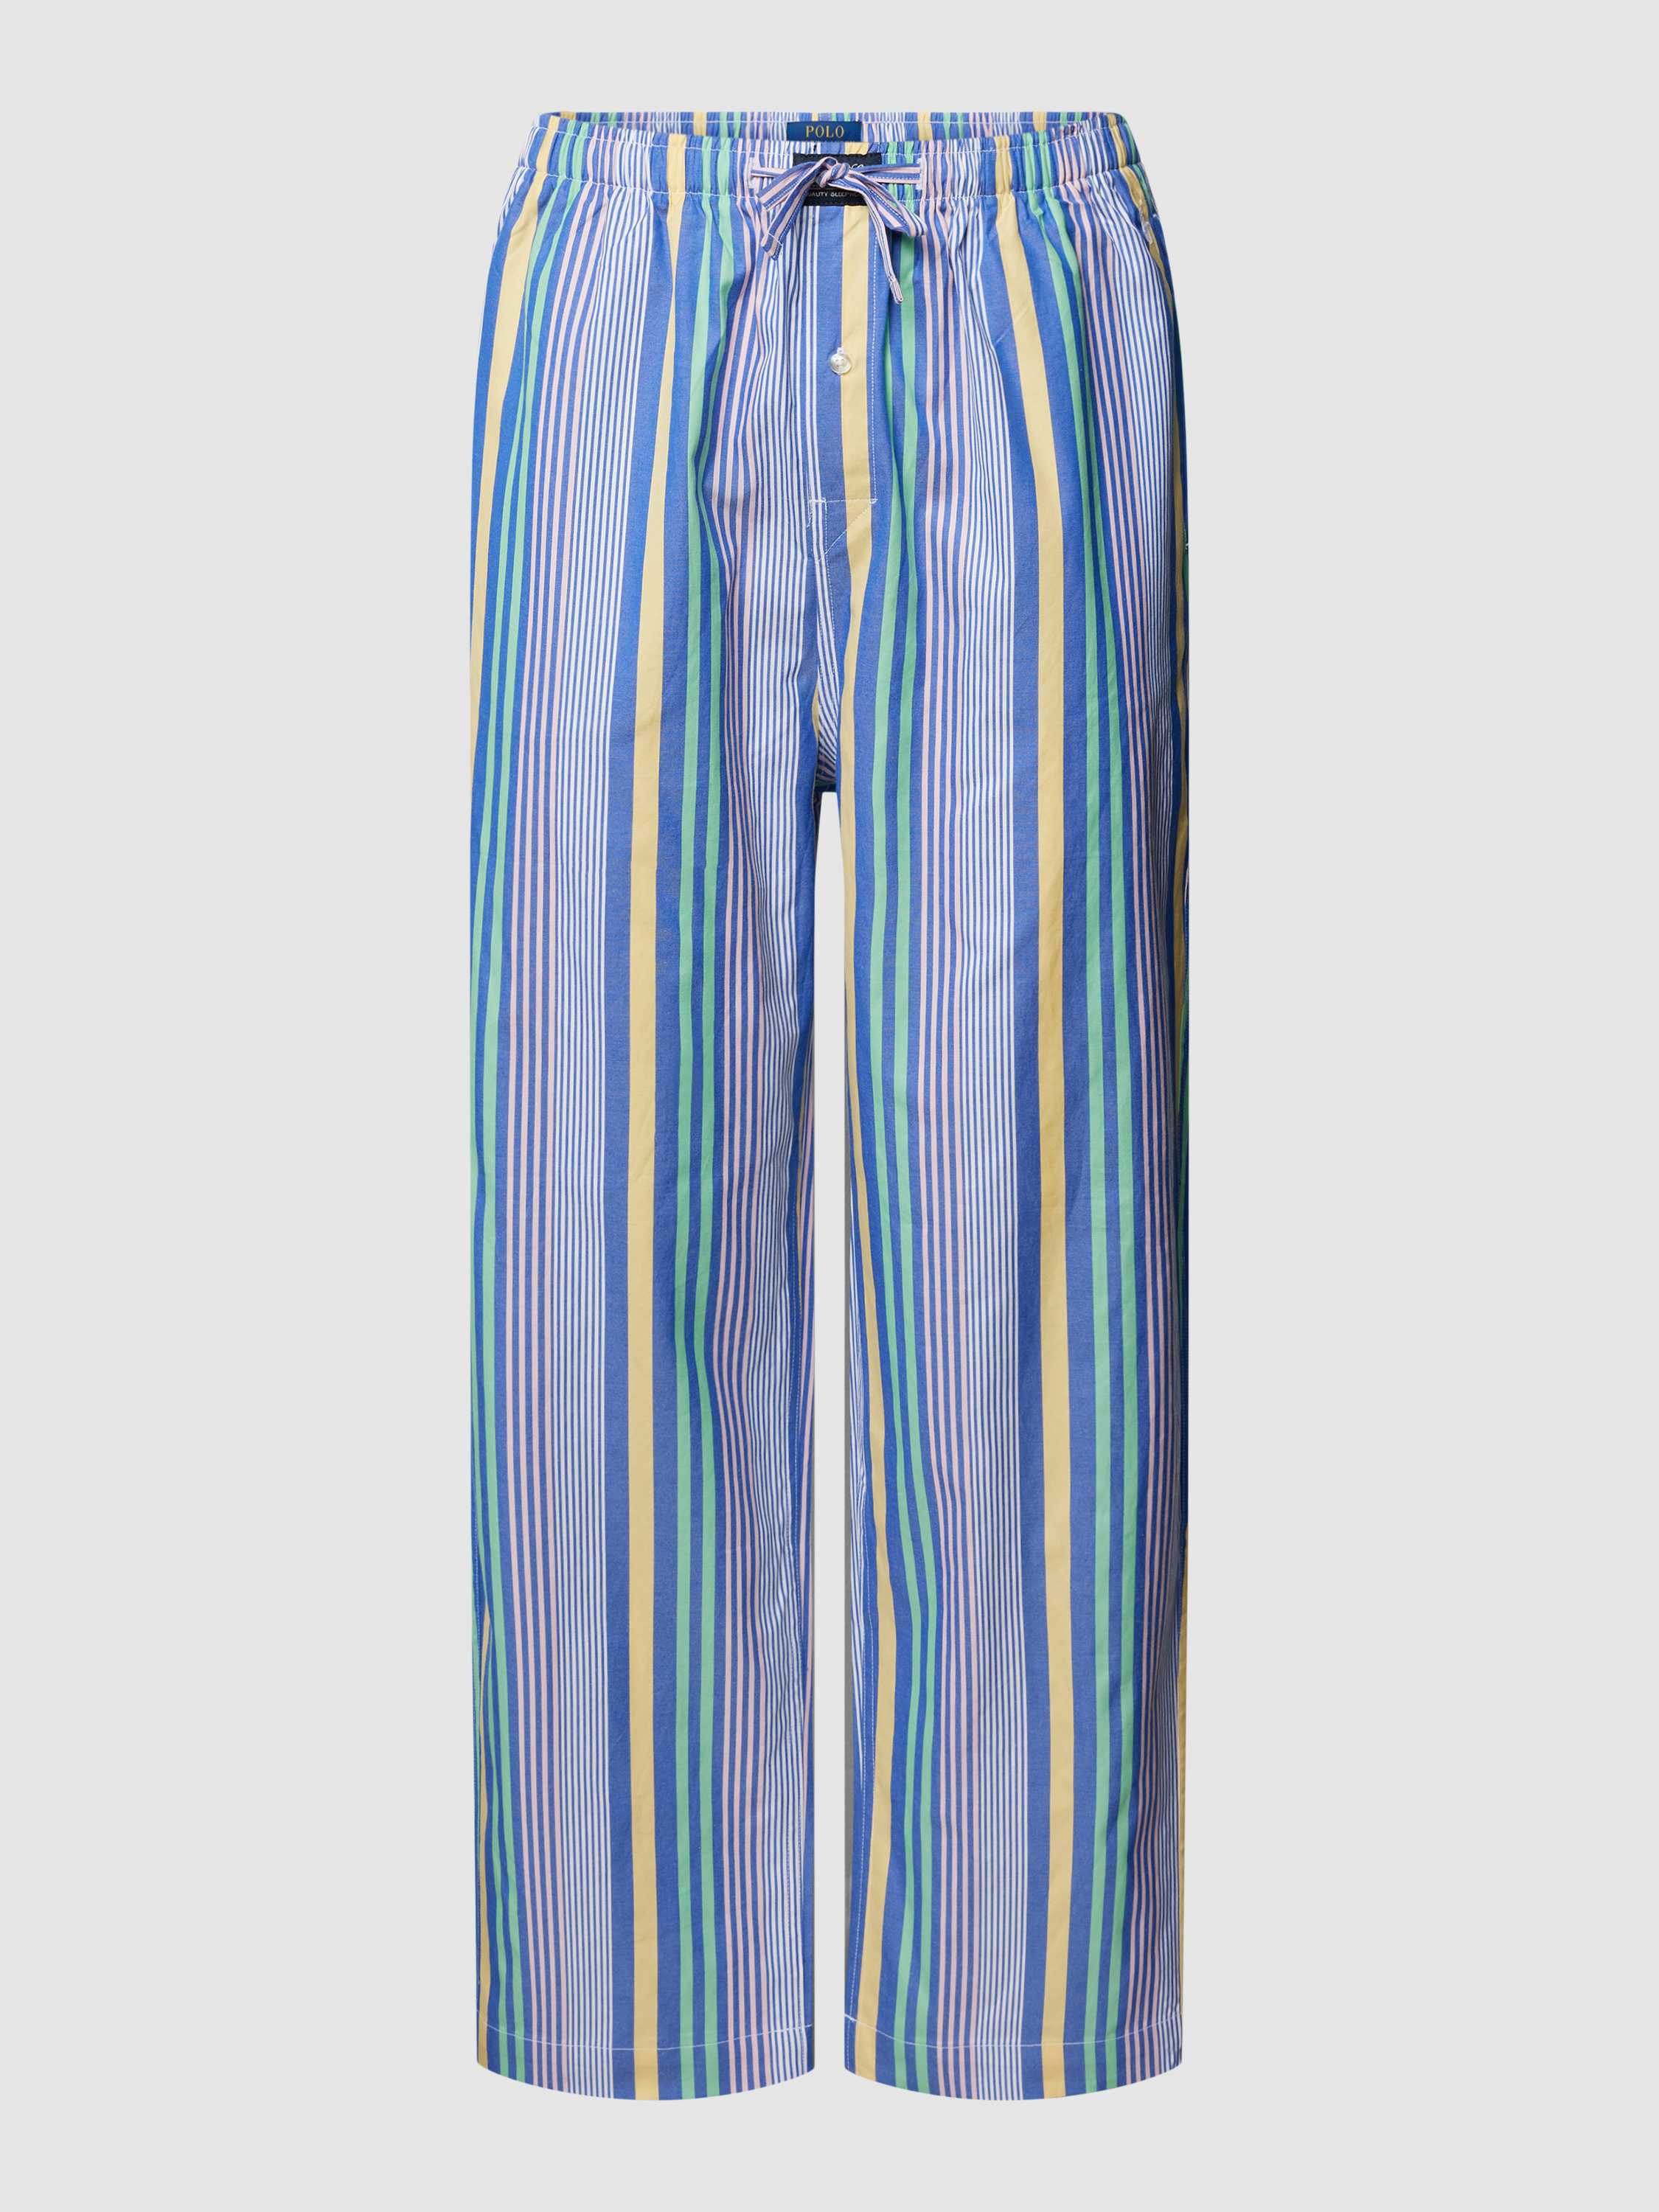 Polo Ralph Lauren Underwear Pyjamabroek met streepmotief